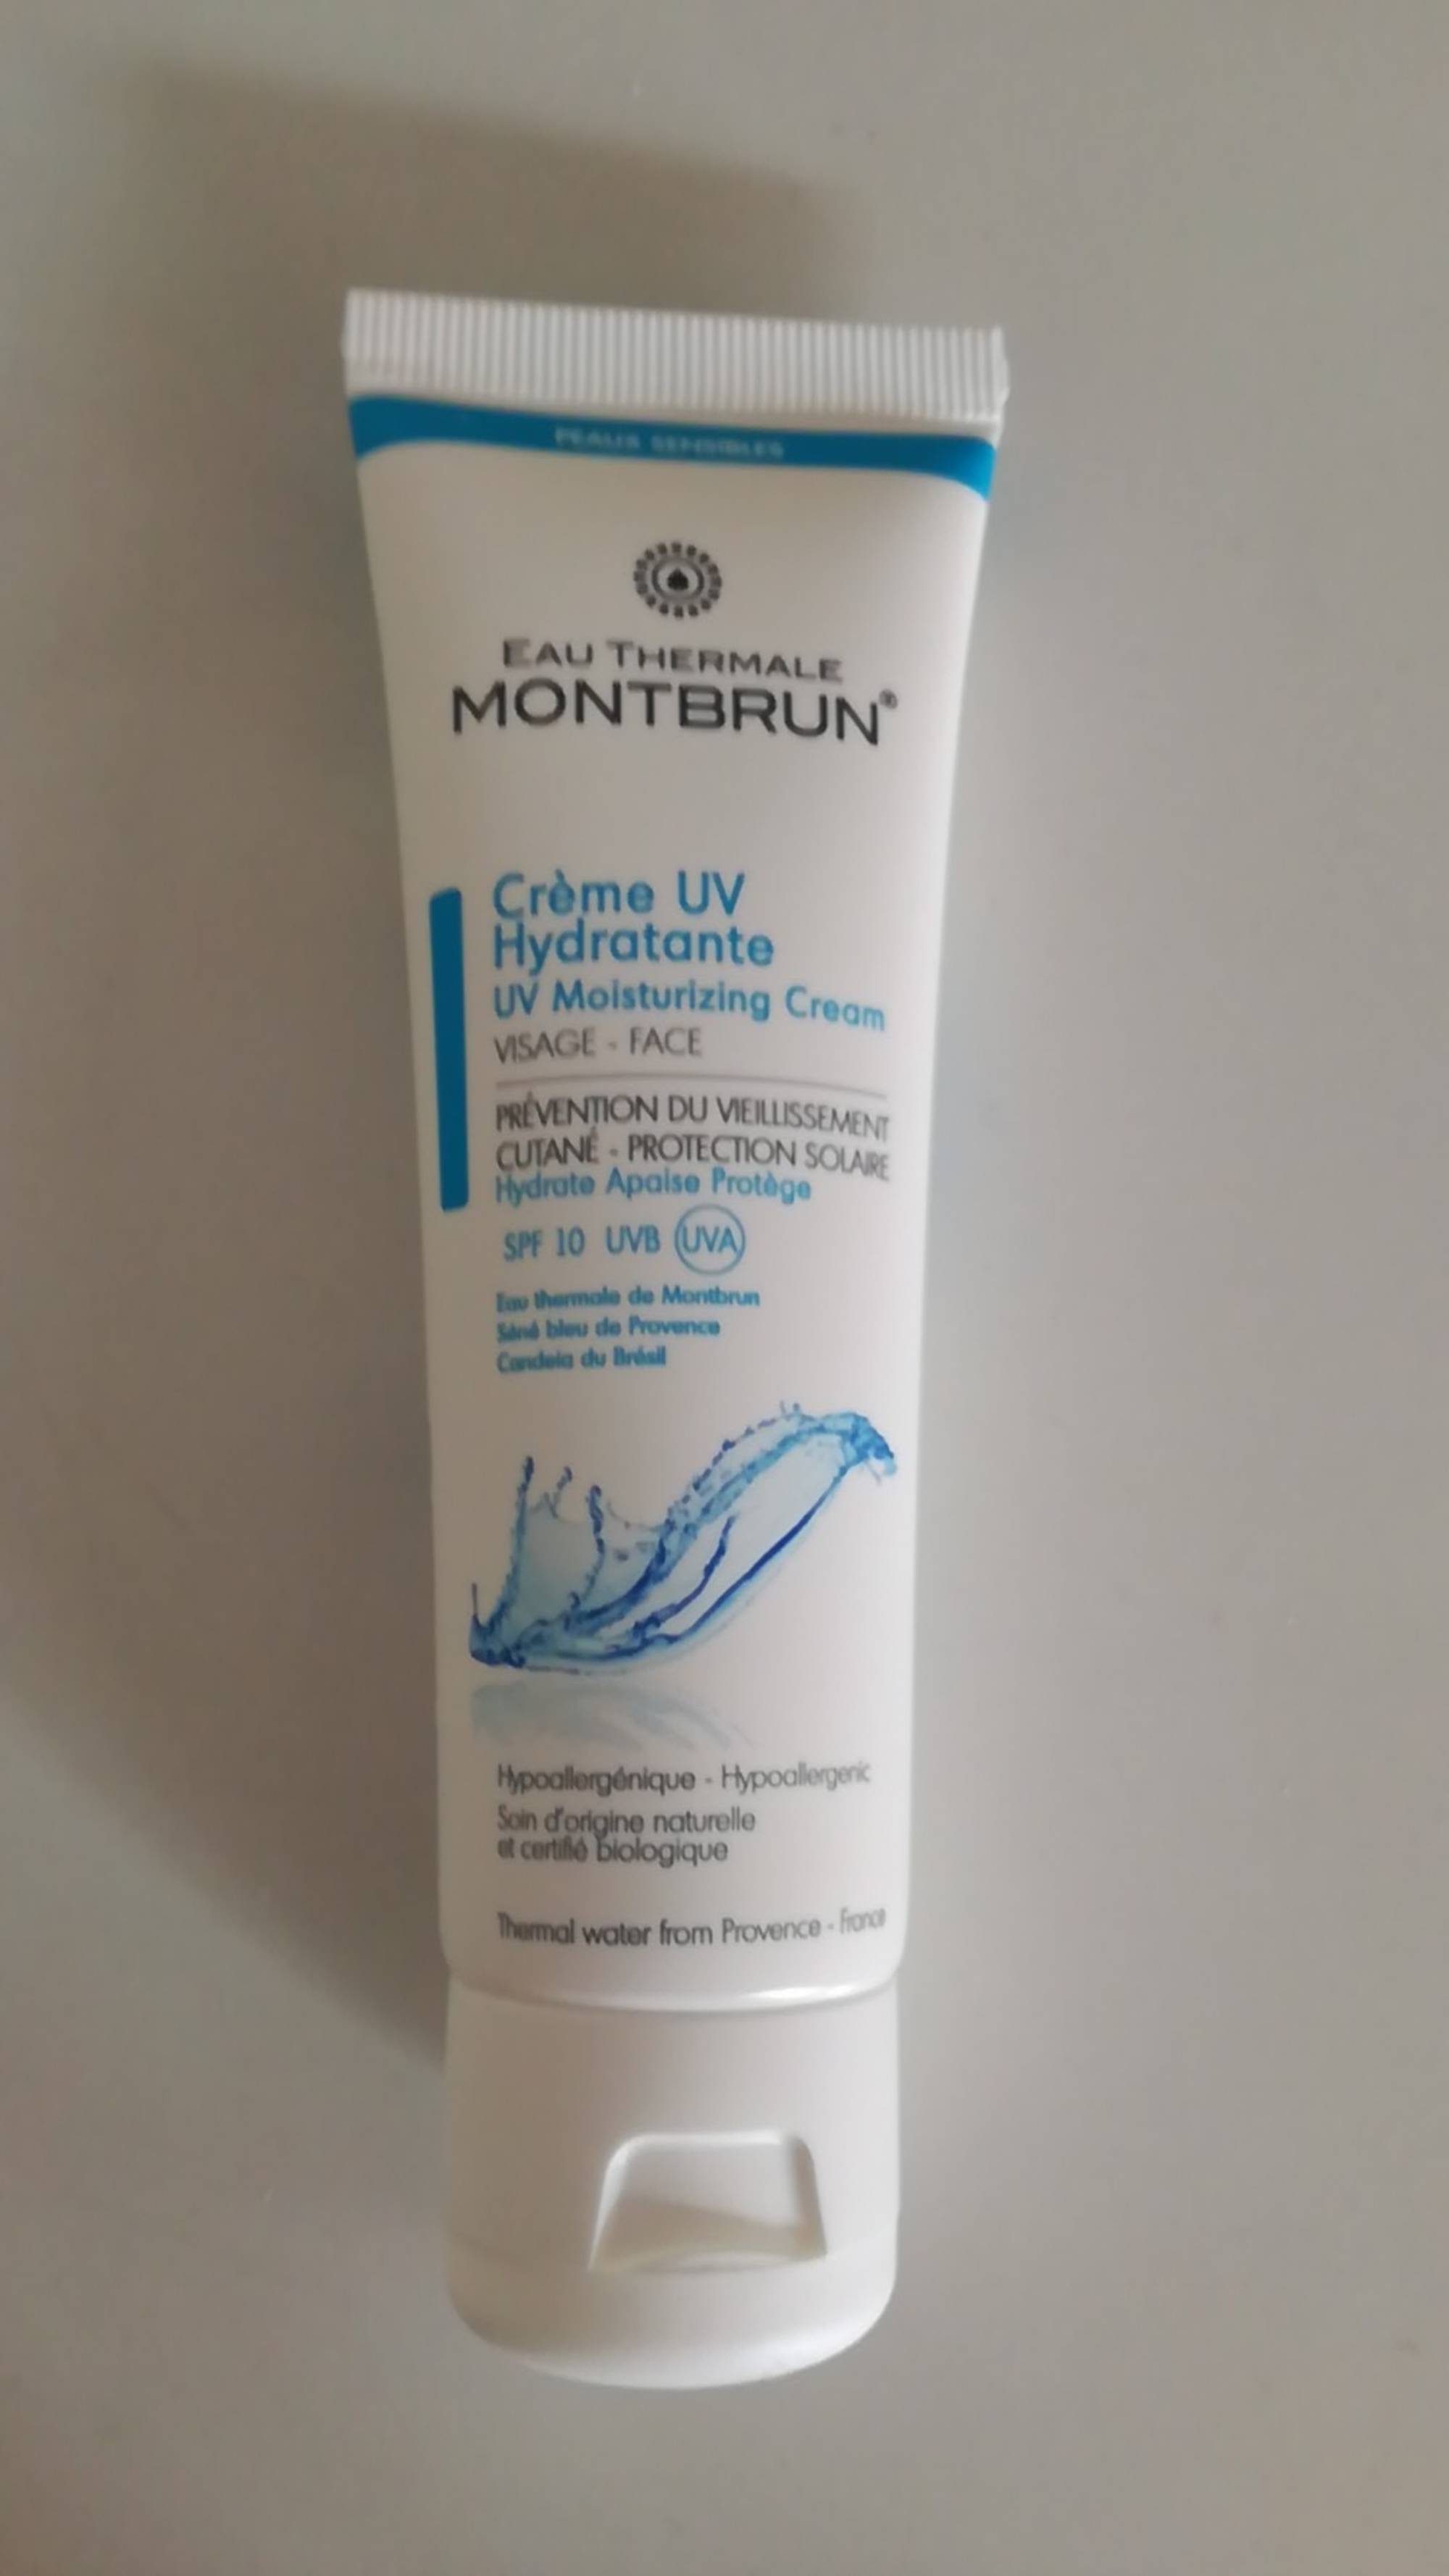 EAU THERMALE MONTBRUN - Crème UV hydratante SPF 10